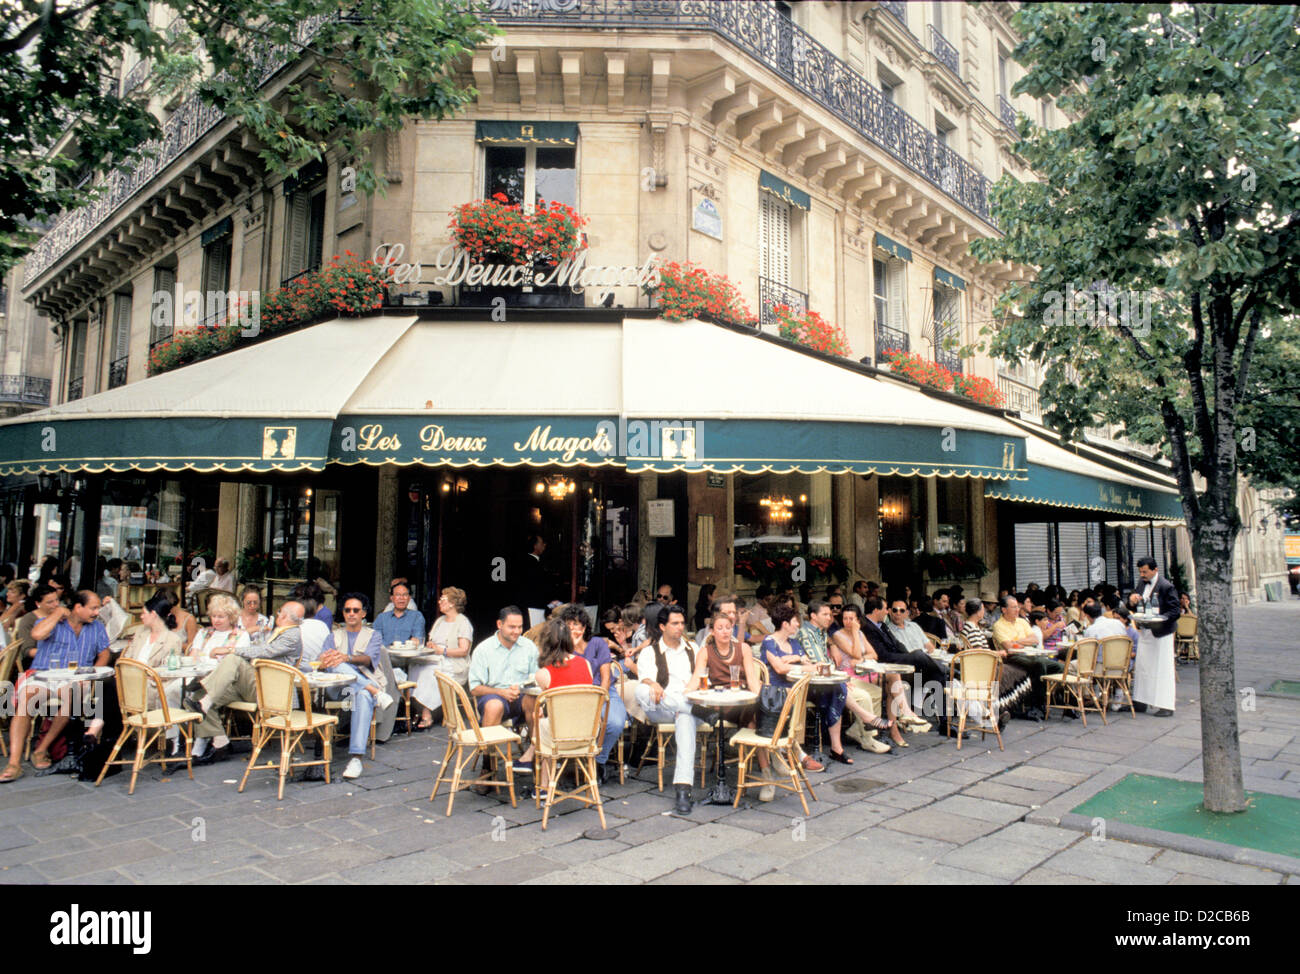 France, Paris, Restaurant, scène de rue Banque D'Images